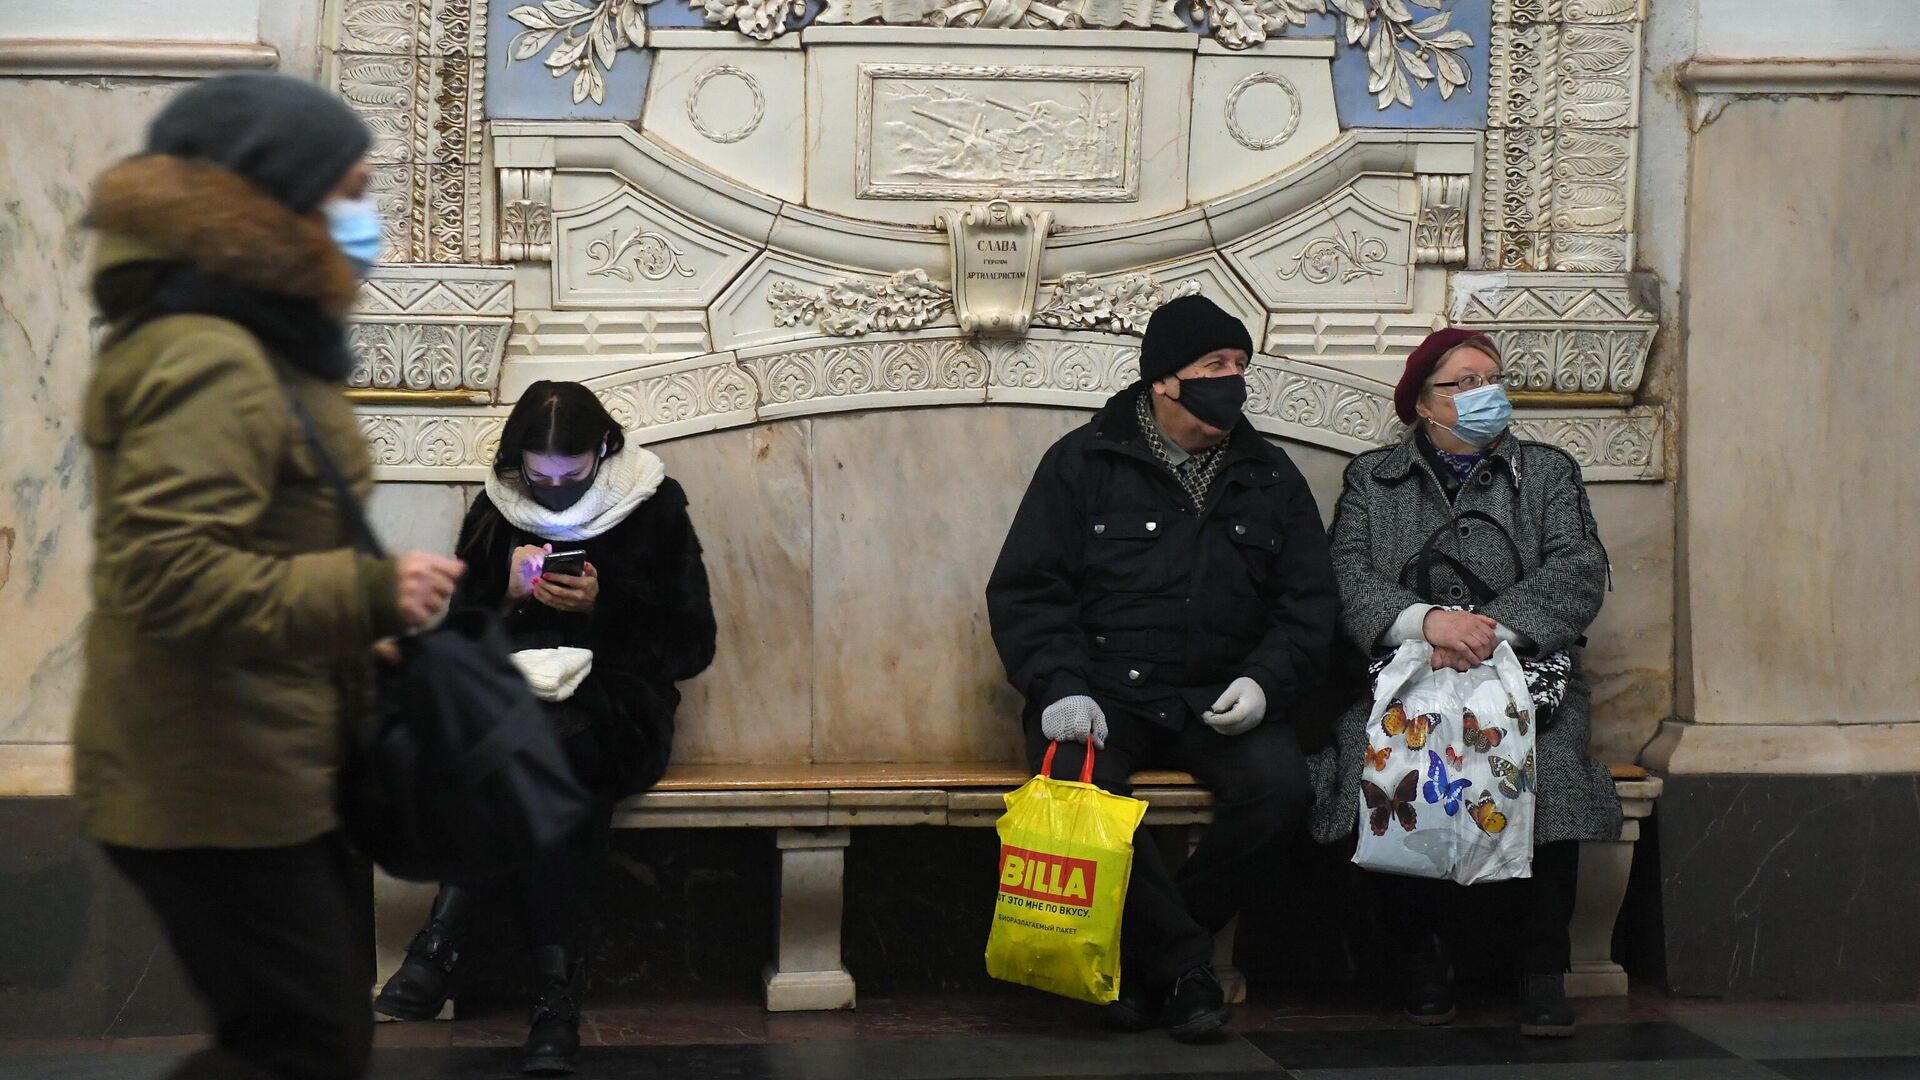 Пассажиры в защитных масках на станции метро Таганская Кольцевой линии в Москве - РИА Новости, 1920, 02.02.2021